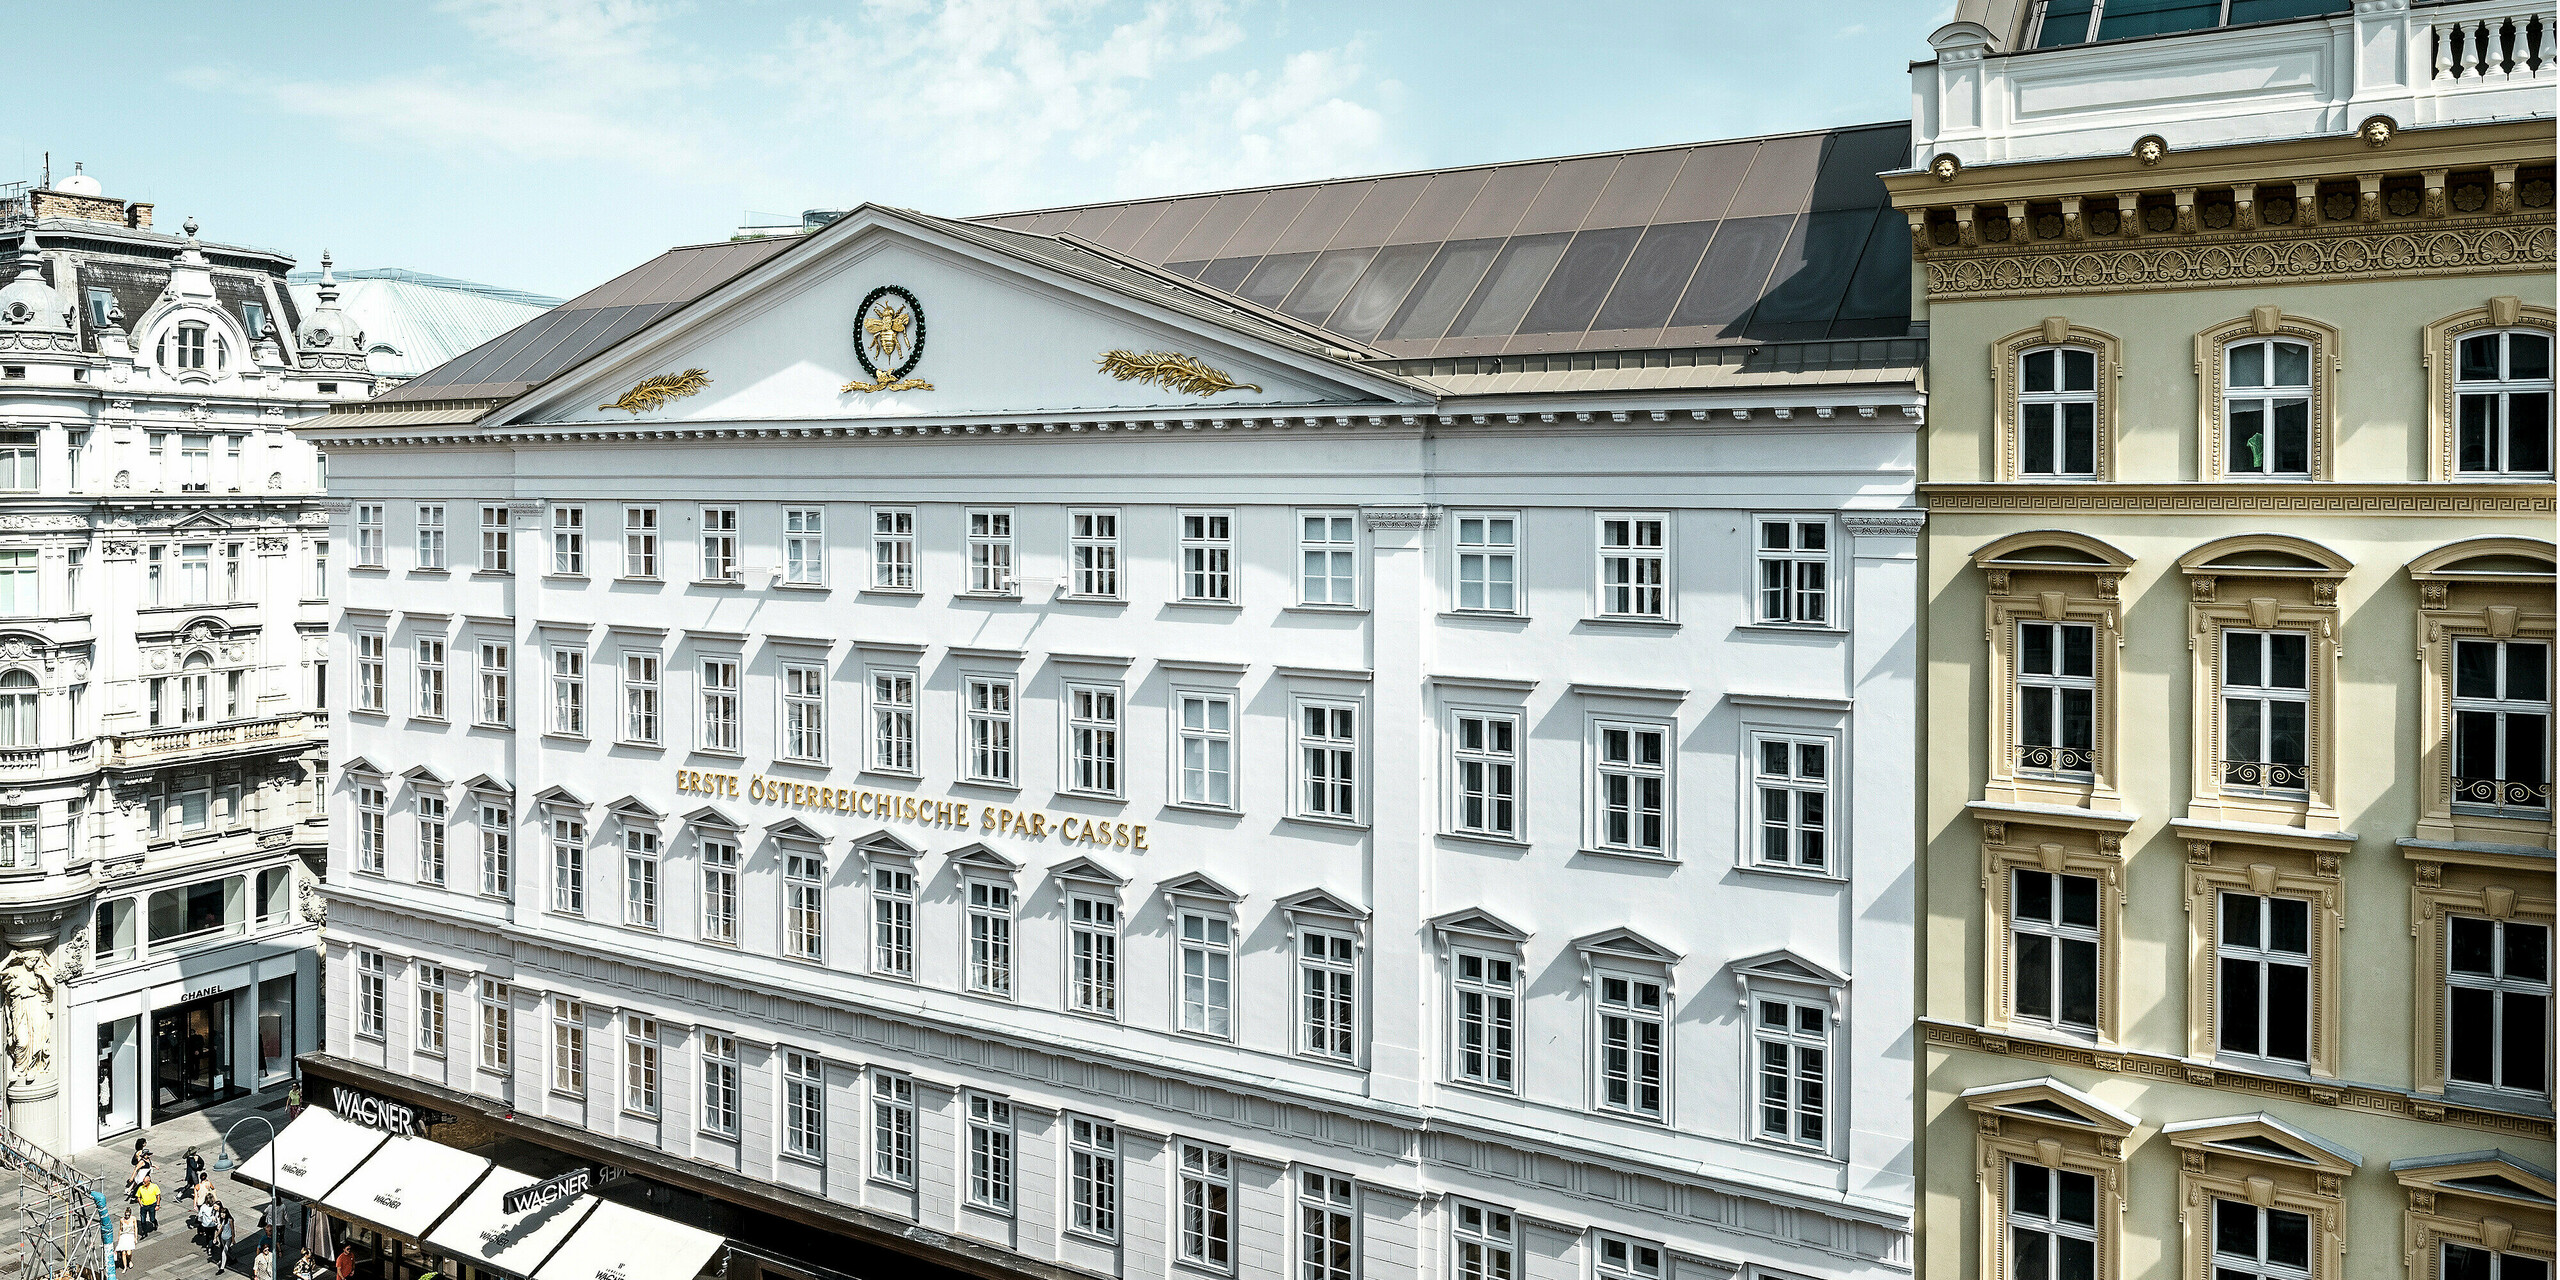 Vue de la partie latérale de l'hôtel, avec sa façade historique et son toit en aluminium de couleur bronze.